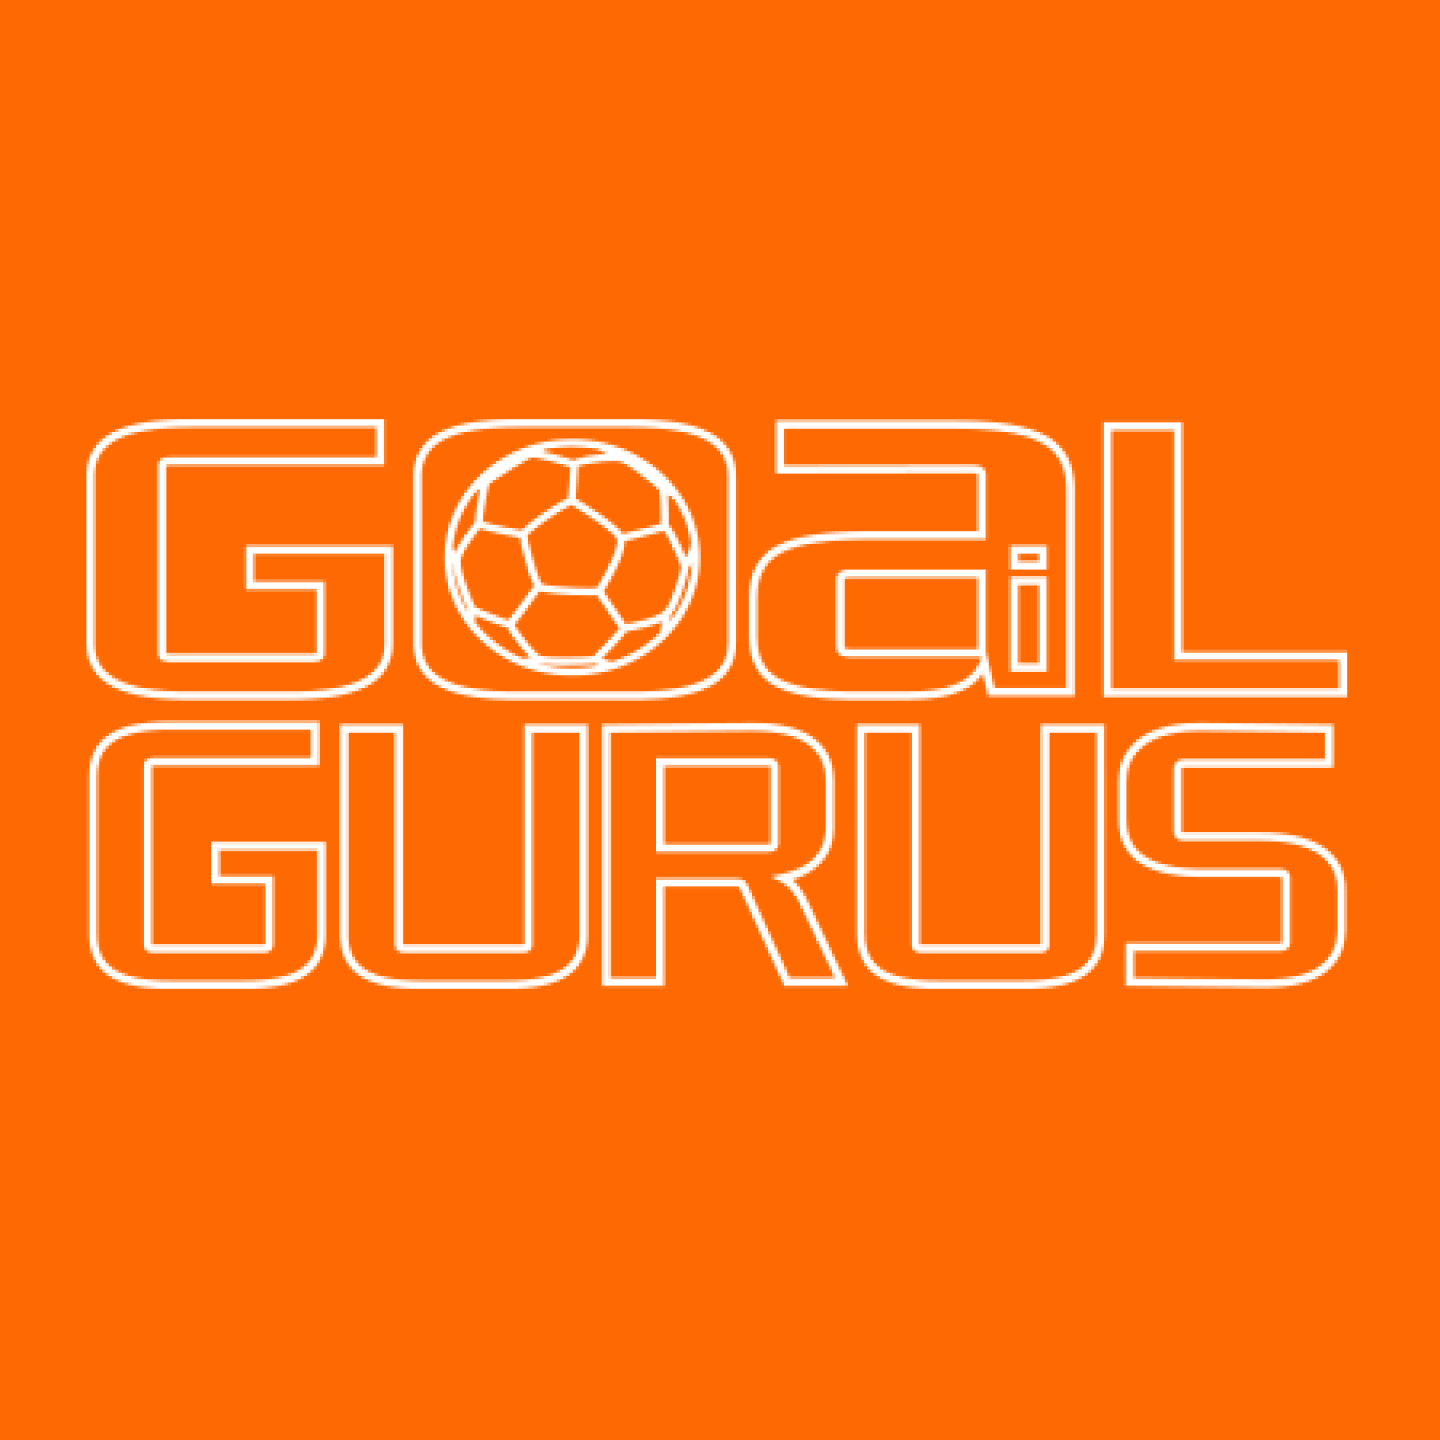 Goal Gurus logo